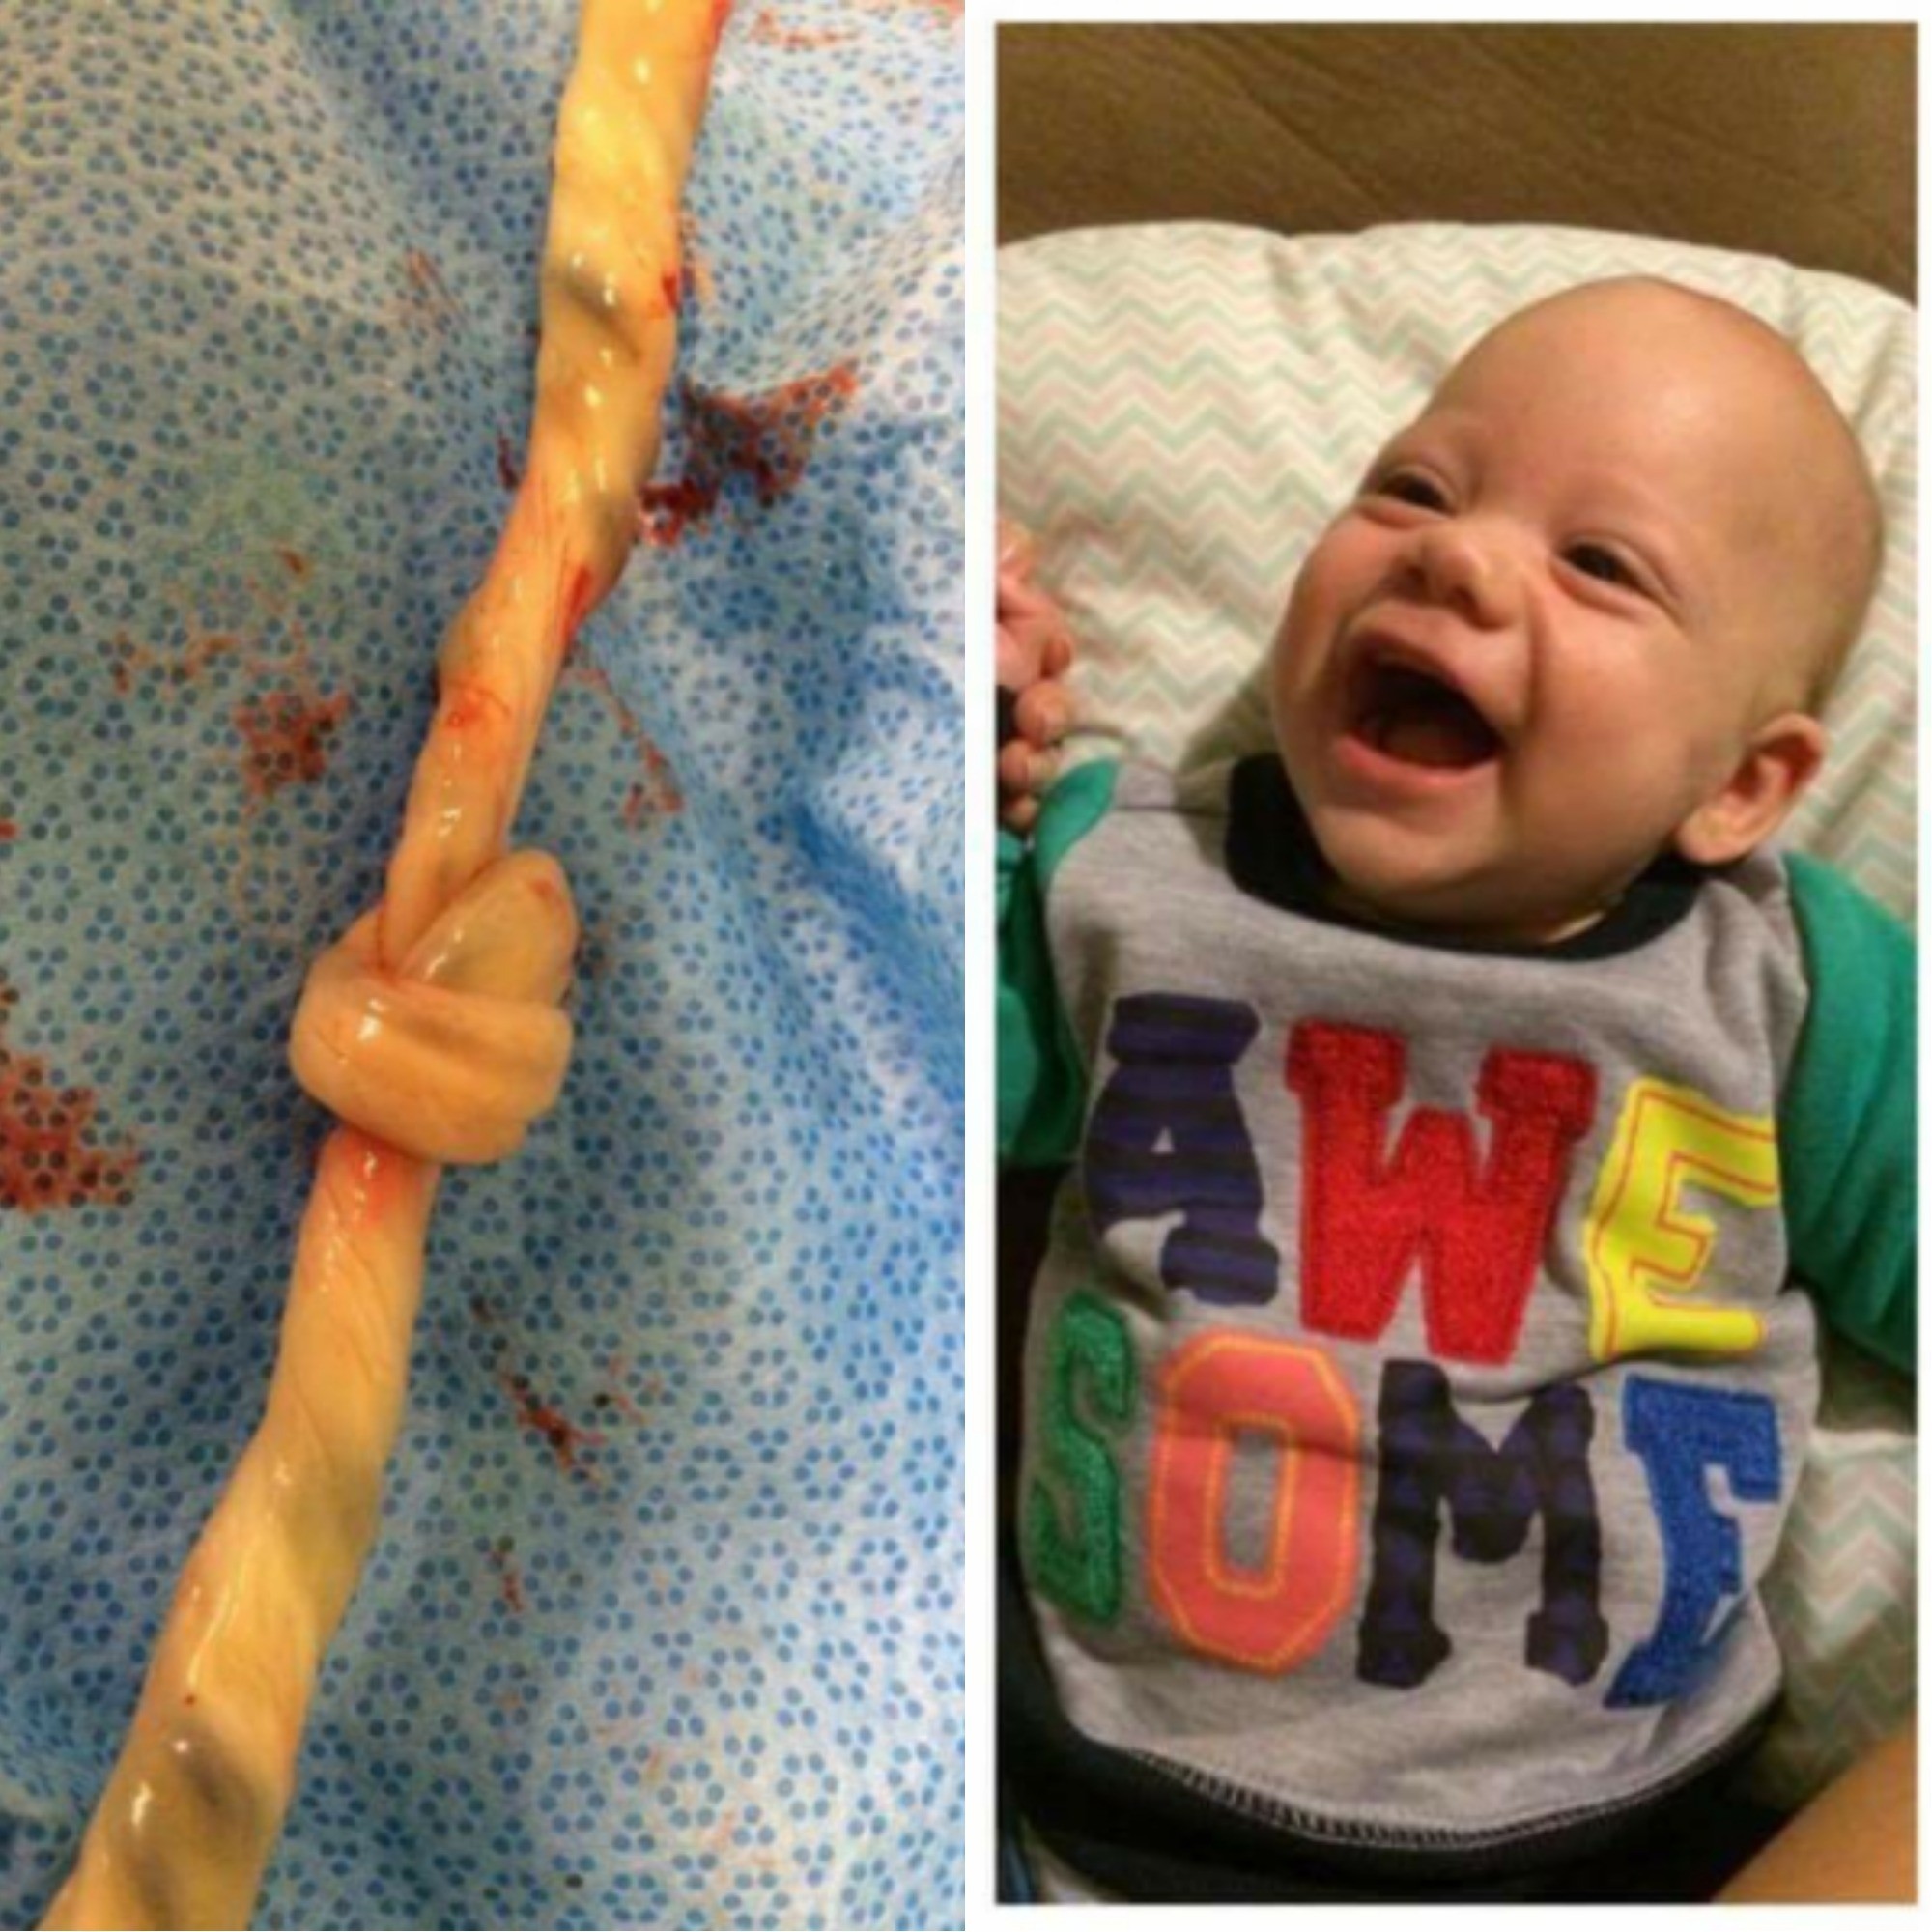 O nó no cordão e Orson quando bebê (Foto: Arquivo pessoal)